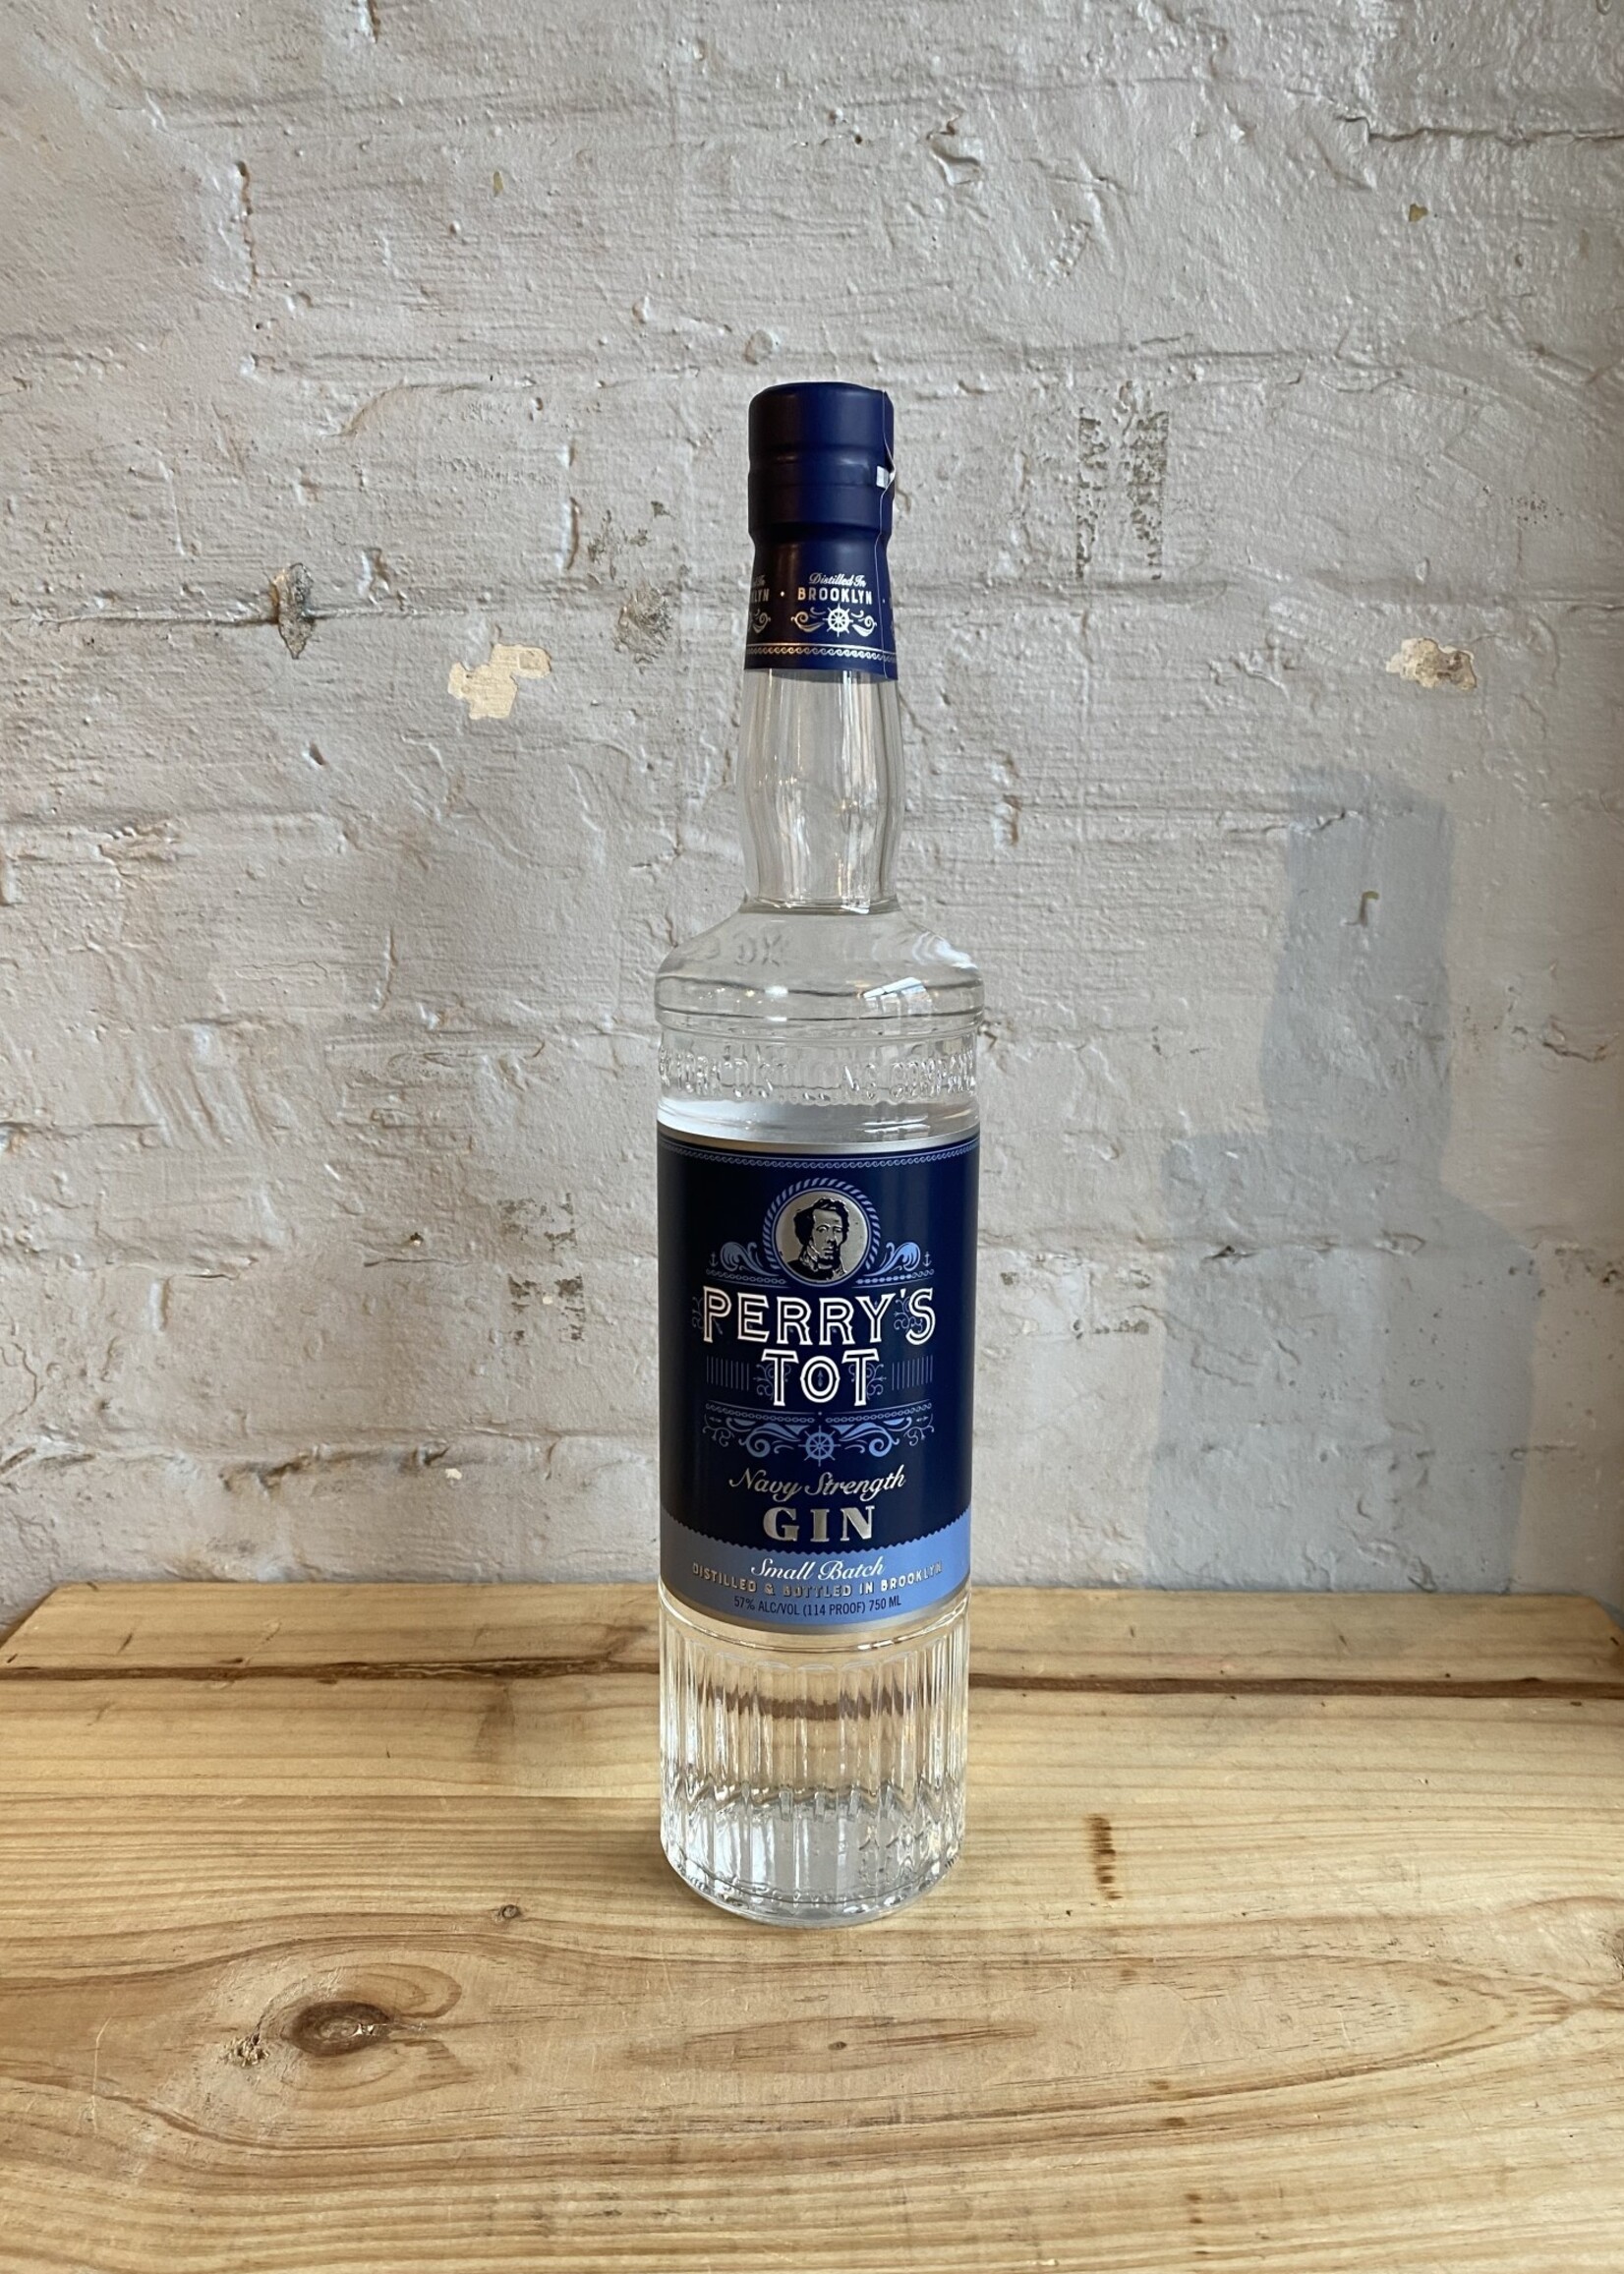 NY Distilling Co 'Perry's Tot' Navy Strength Gin - Brooklyn, NY (750ml)